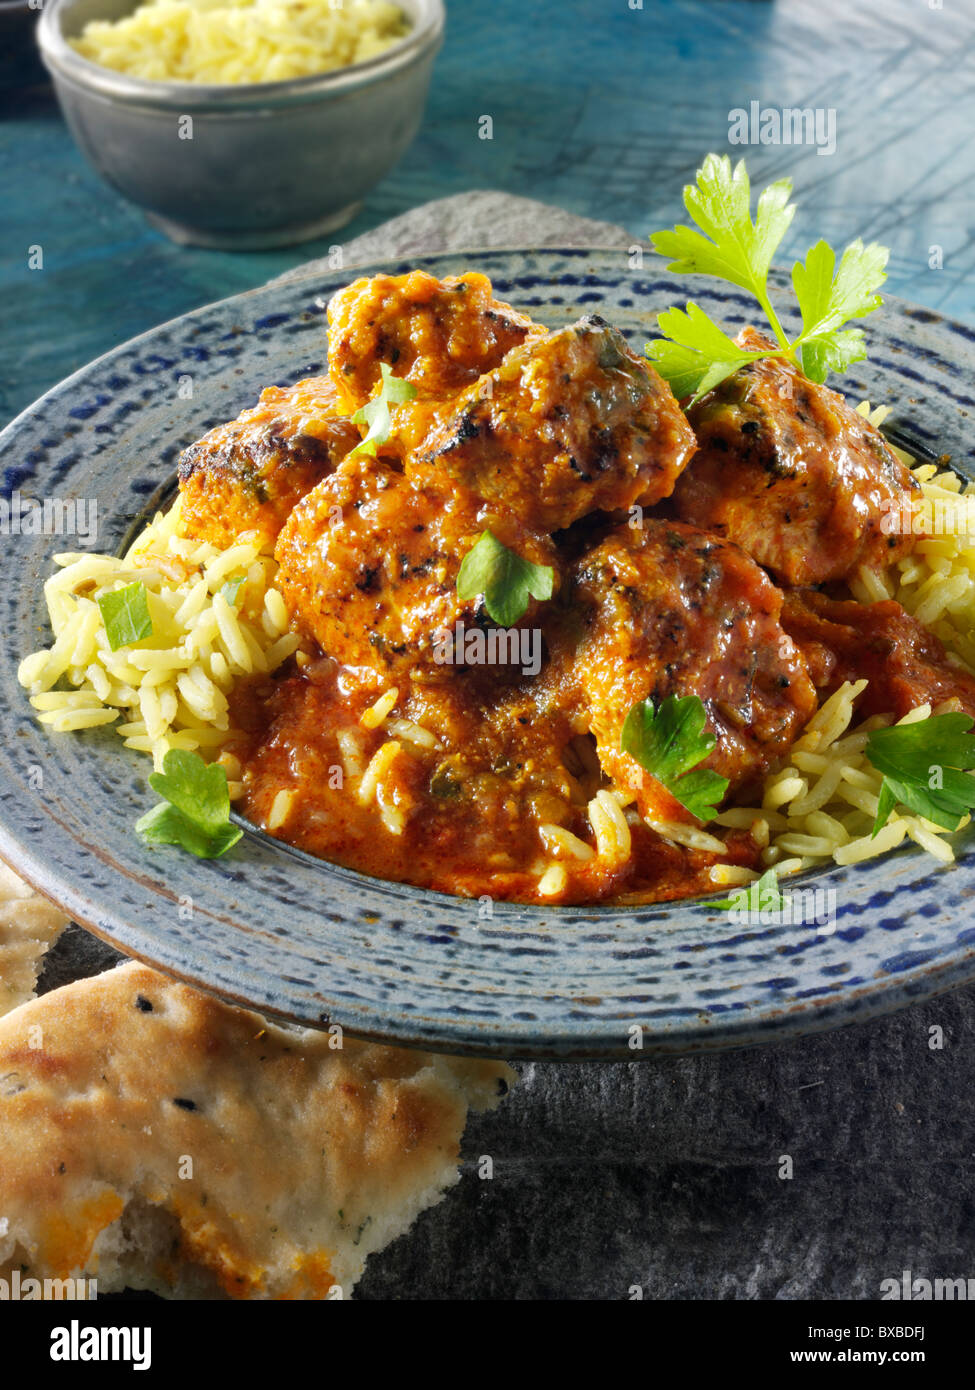 Dopiaza Hühnercurry & Reis, indisches Essen Rezept Bilder, Fotos & Bilder Stockfoto